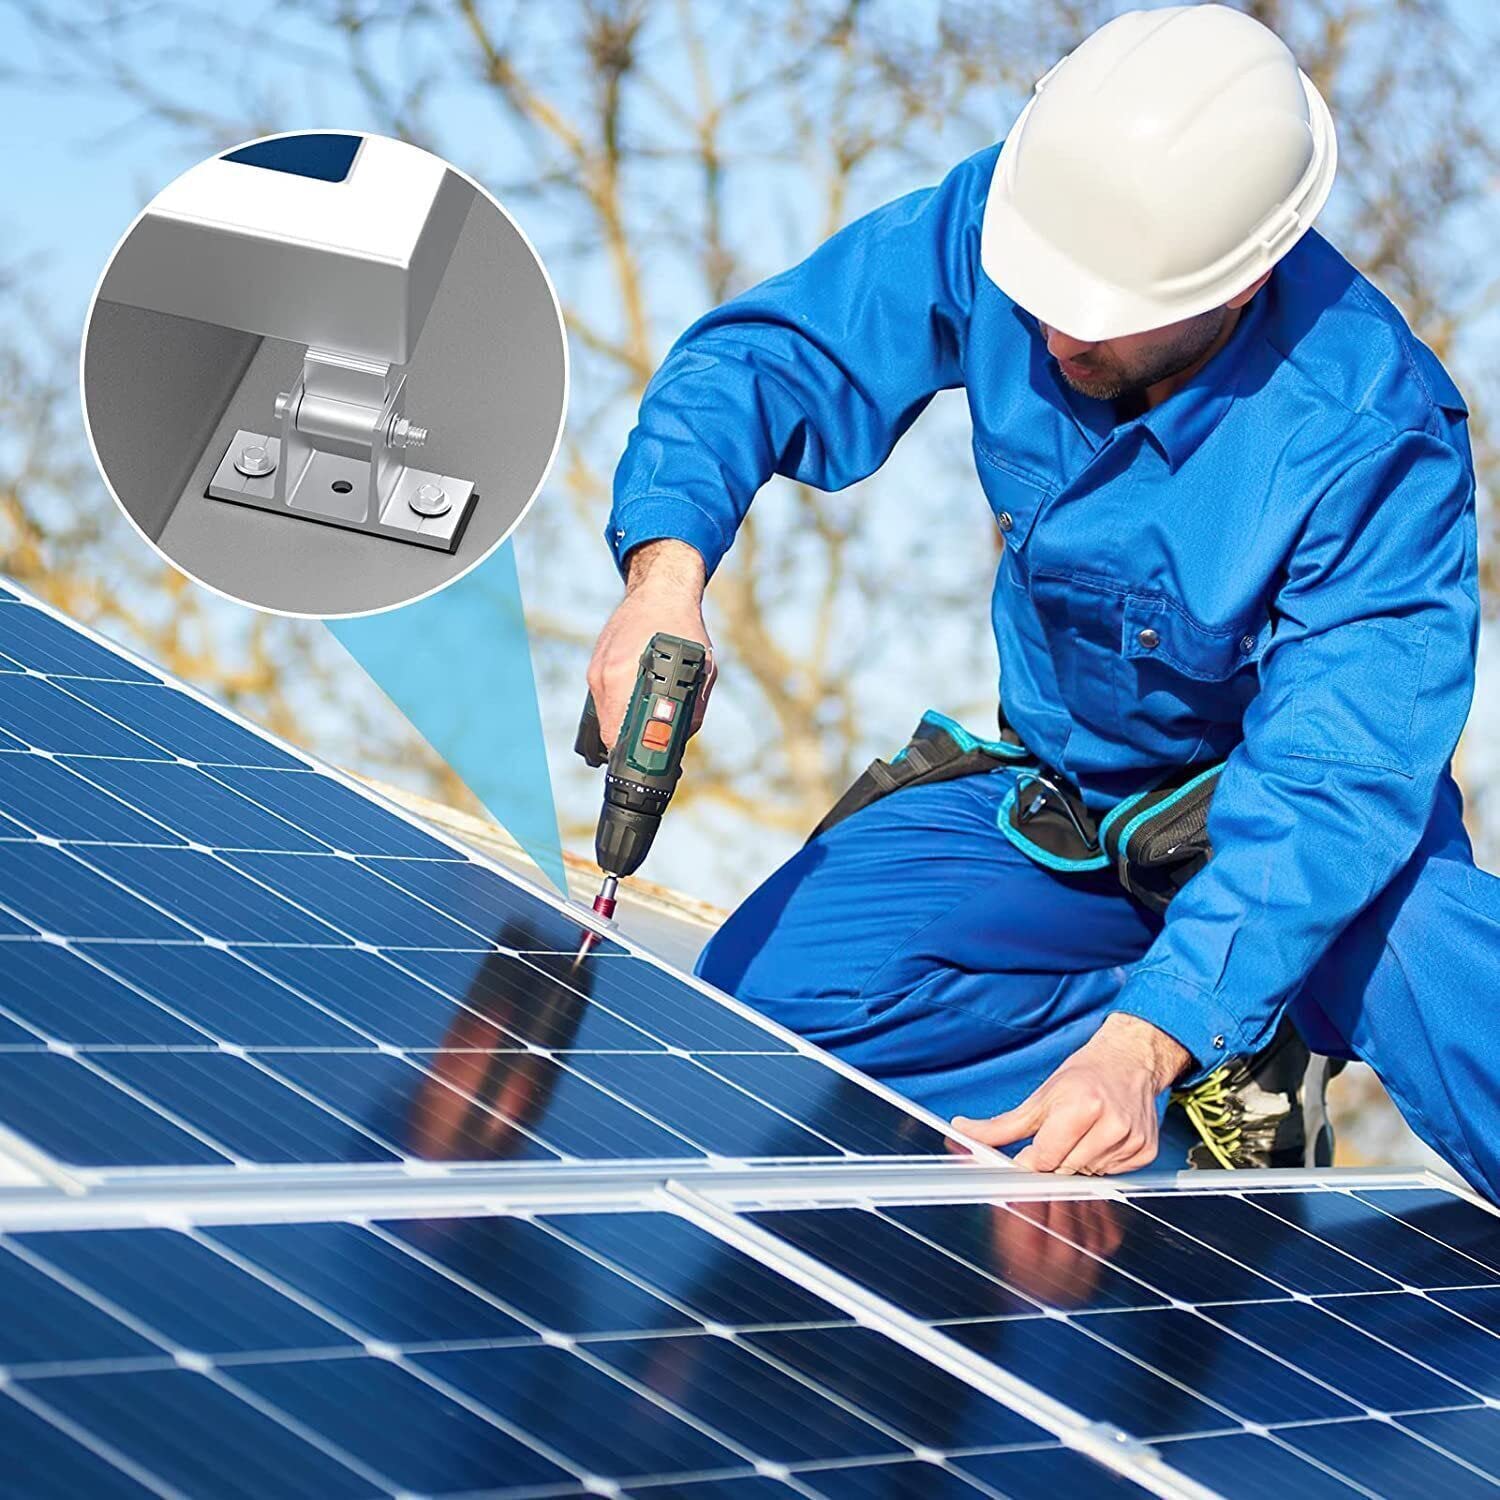 BLUESUN Aluminiumlegierung Solarmodul Halterung für Flachdach oder Wandmontage (Verstellbar) - Bluesun Solar DE